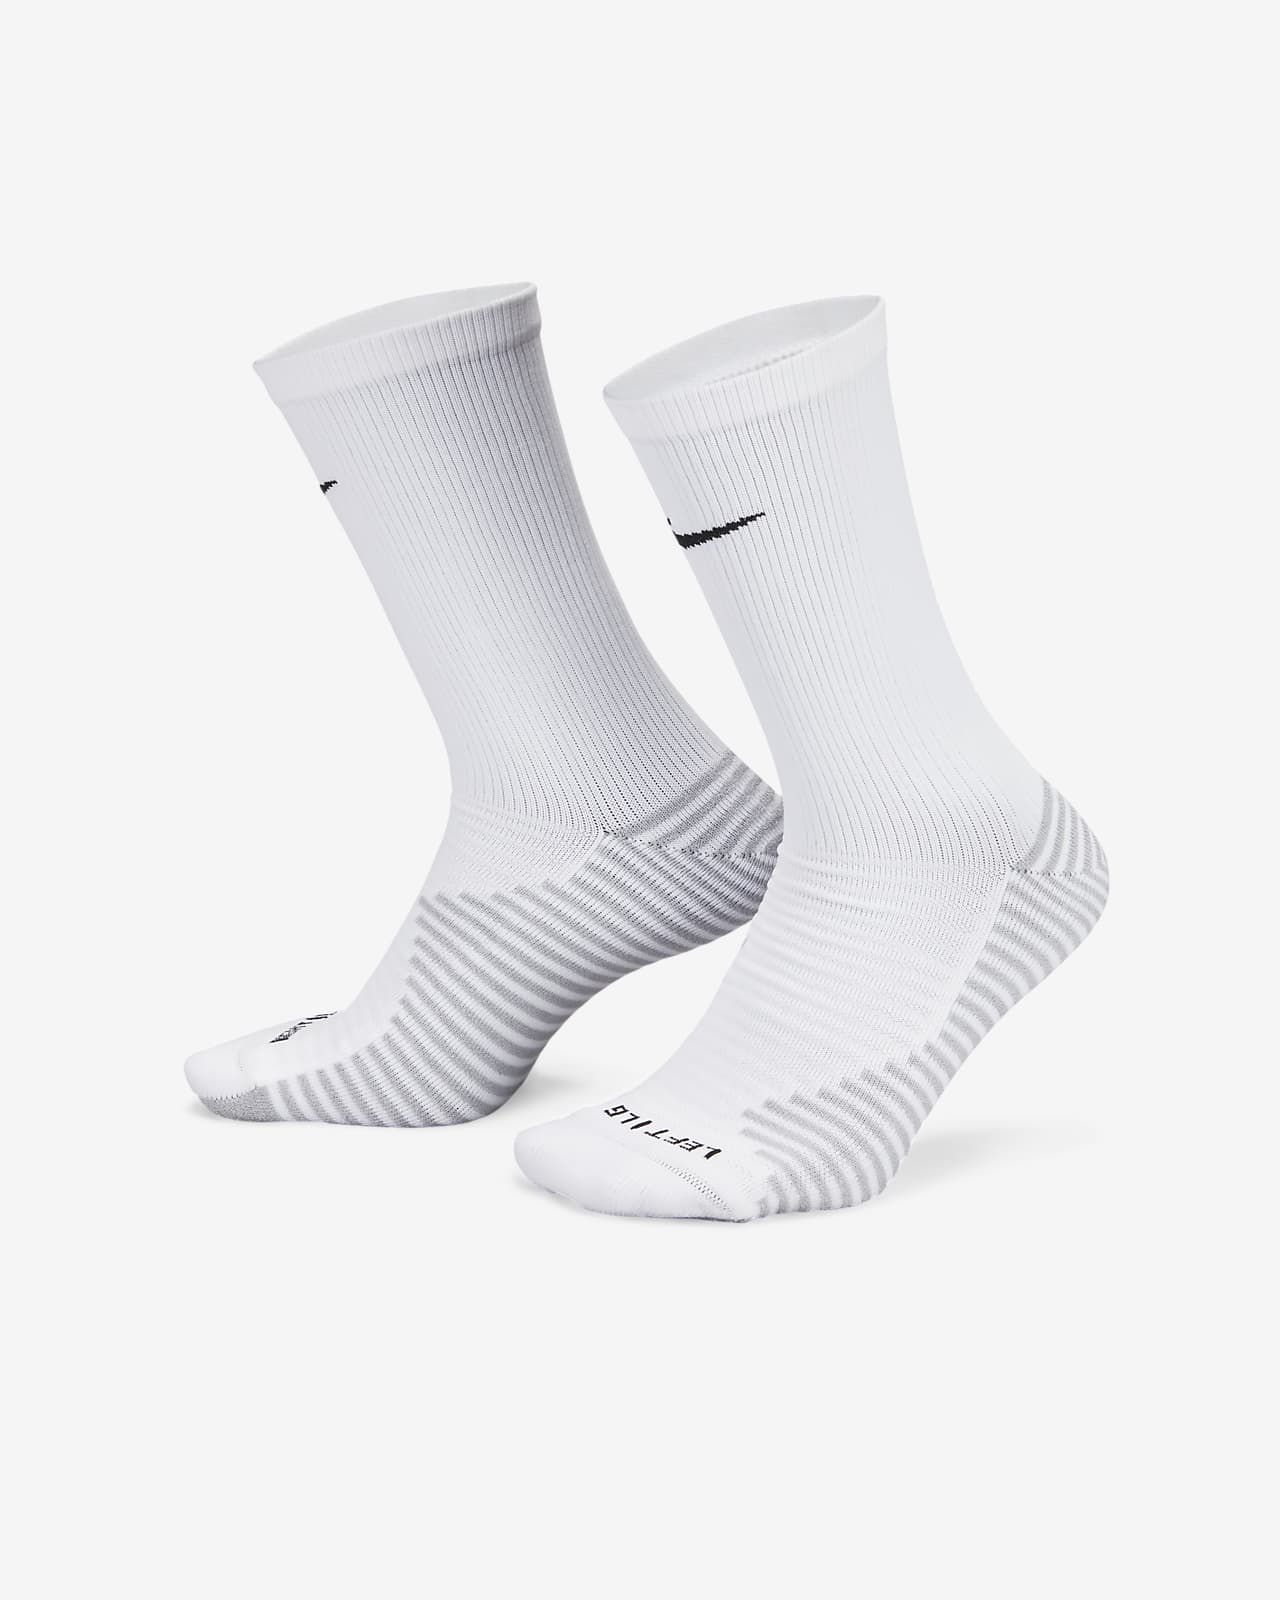 Ποδοσφαιρικές κάλτσες μεσαίου ύψους Nike Strike